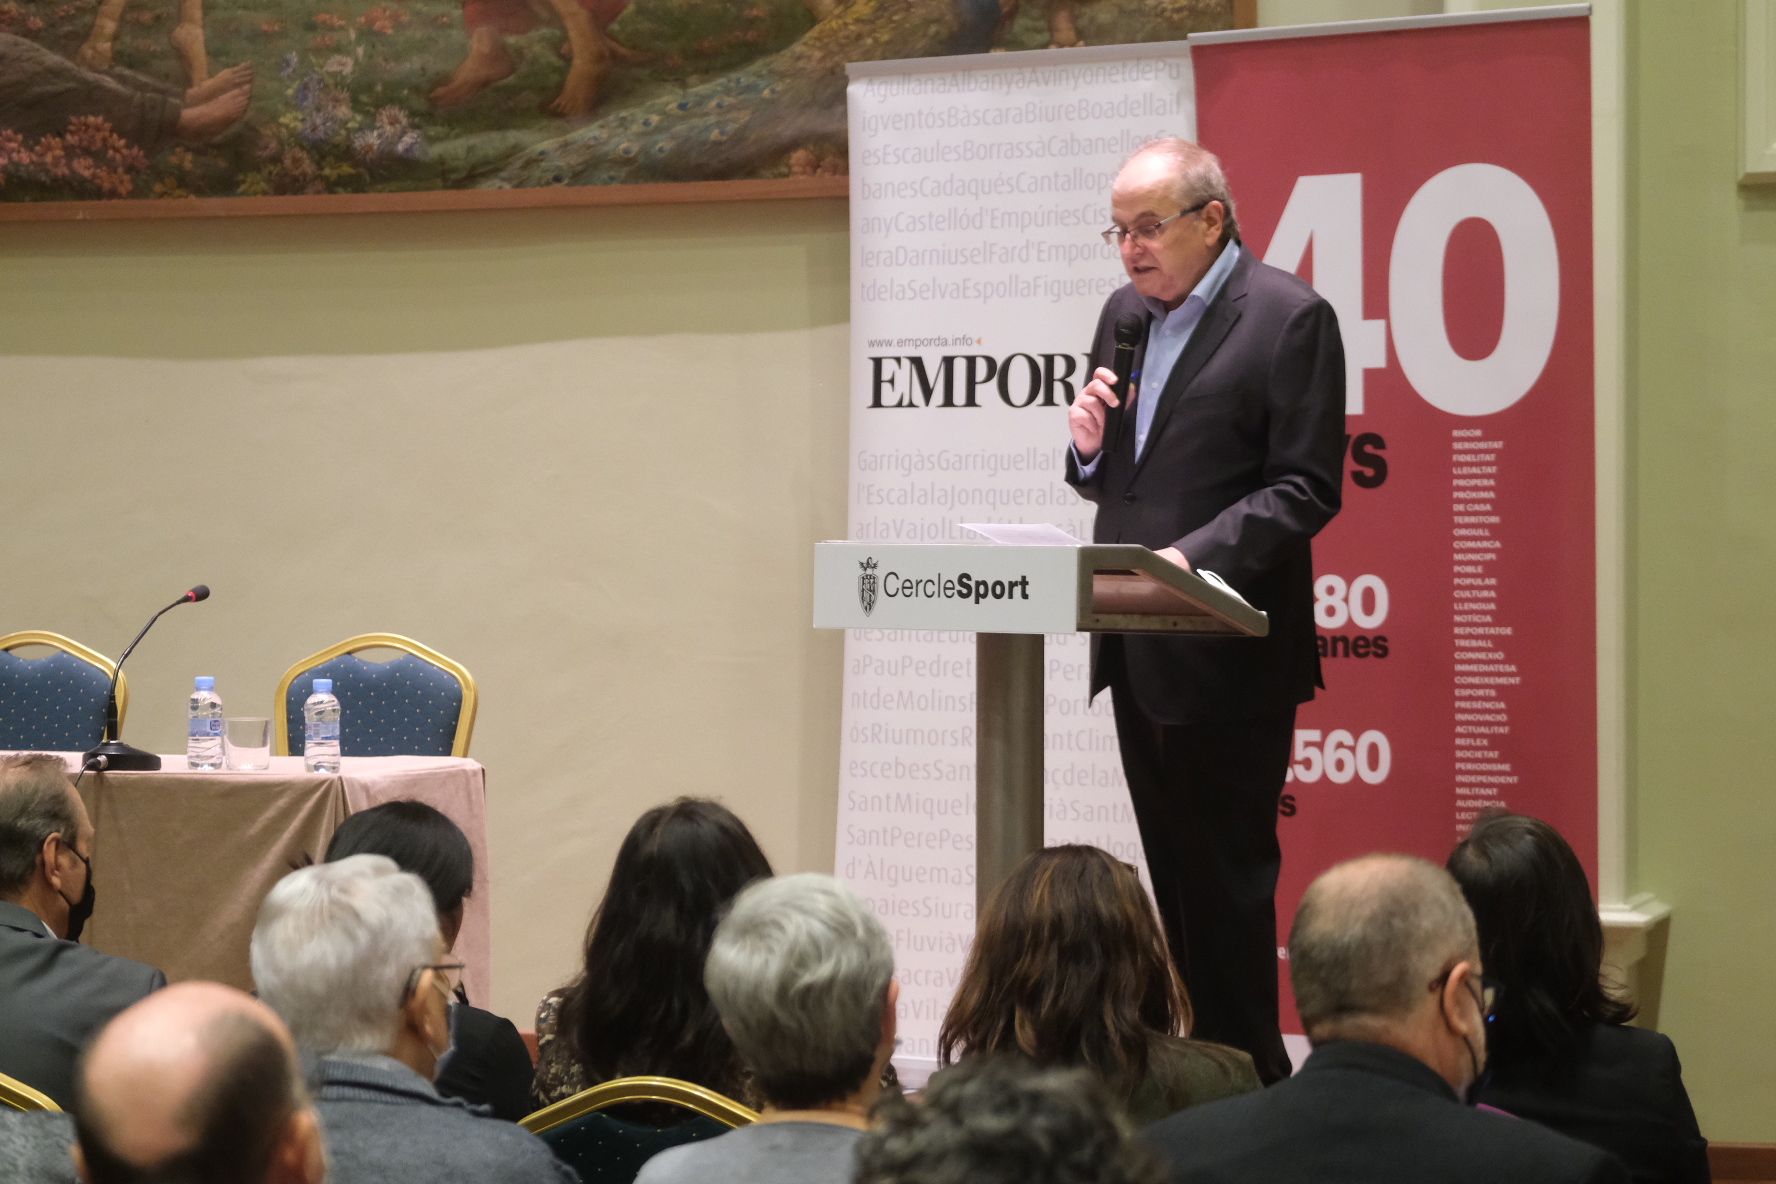 La Premsa Comarcal celebra el 40è aniversari al Cercle Sport de Figueres